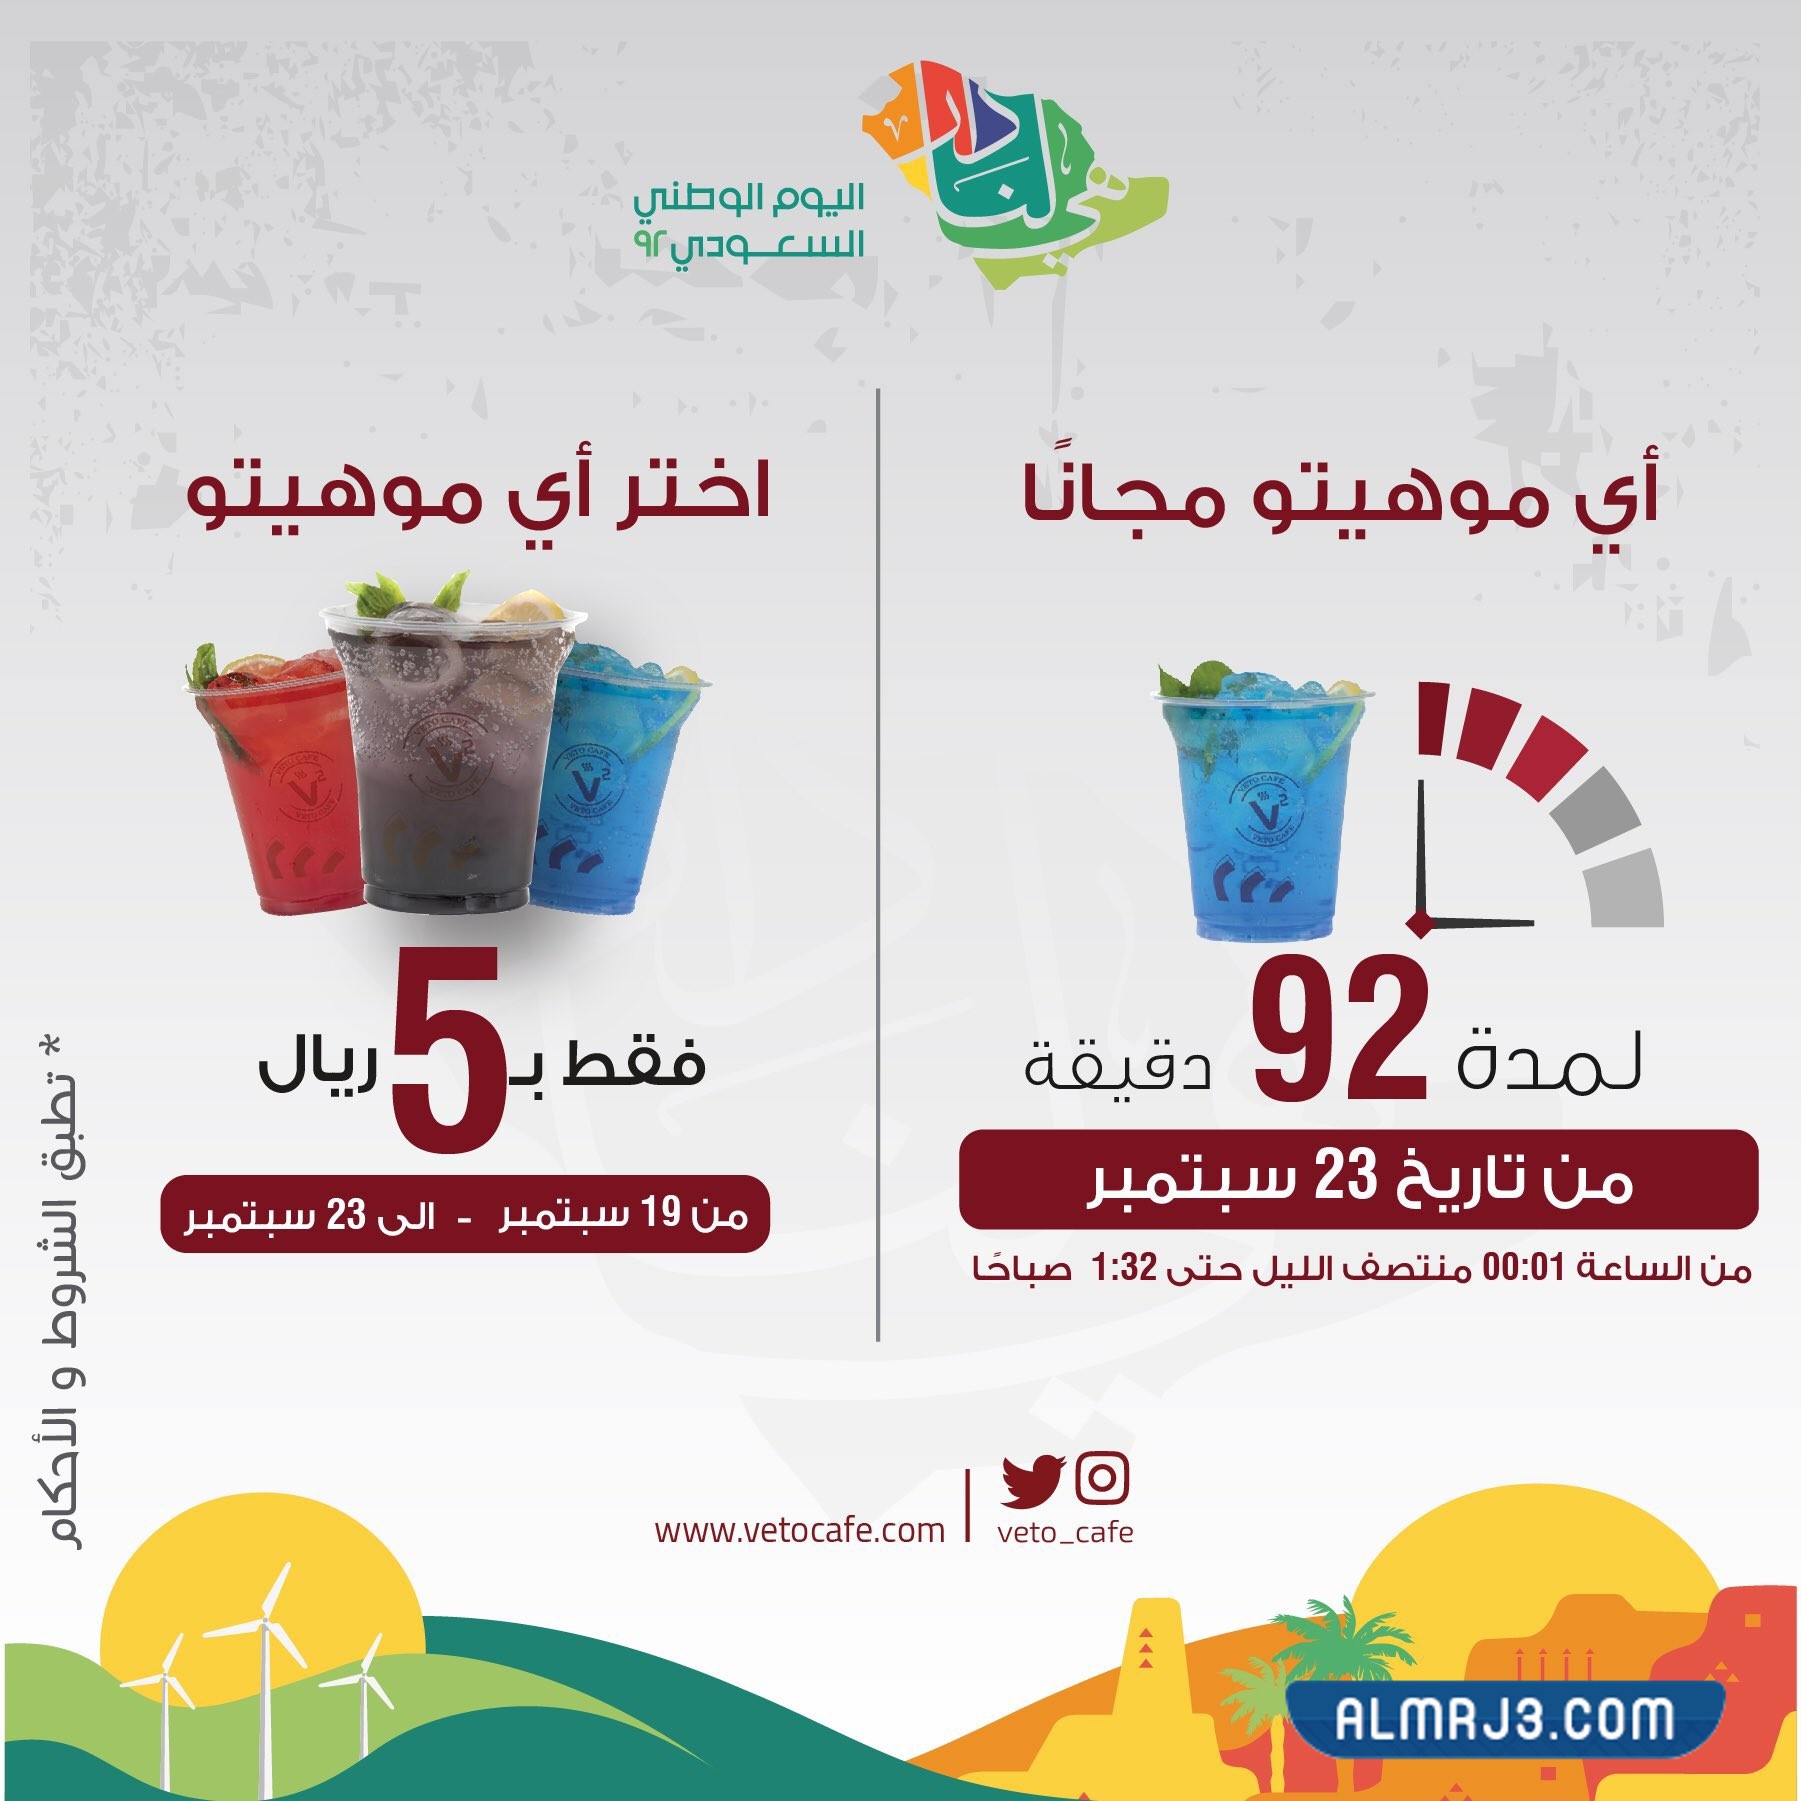 يضم اليوم الوطني 92 مقهى في الرياض